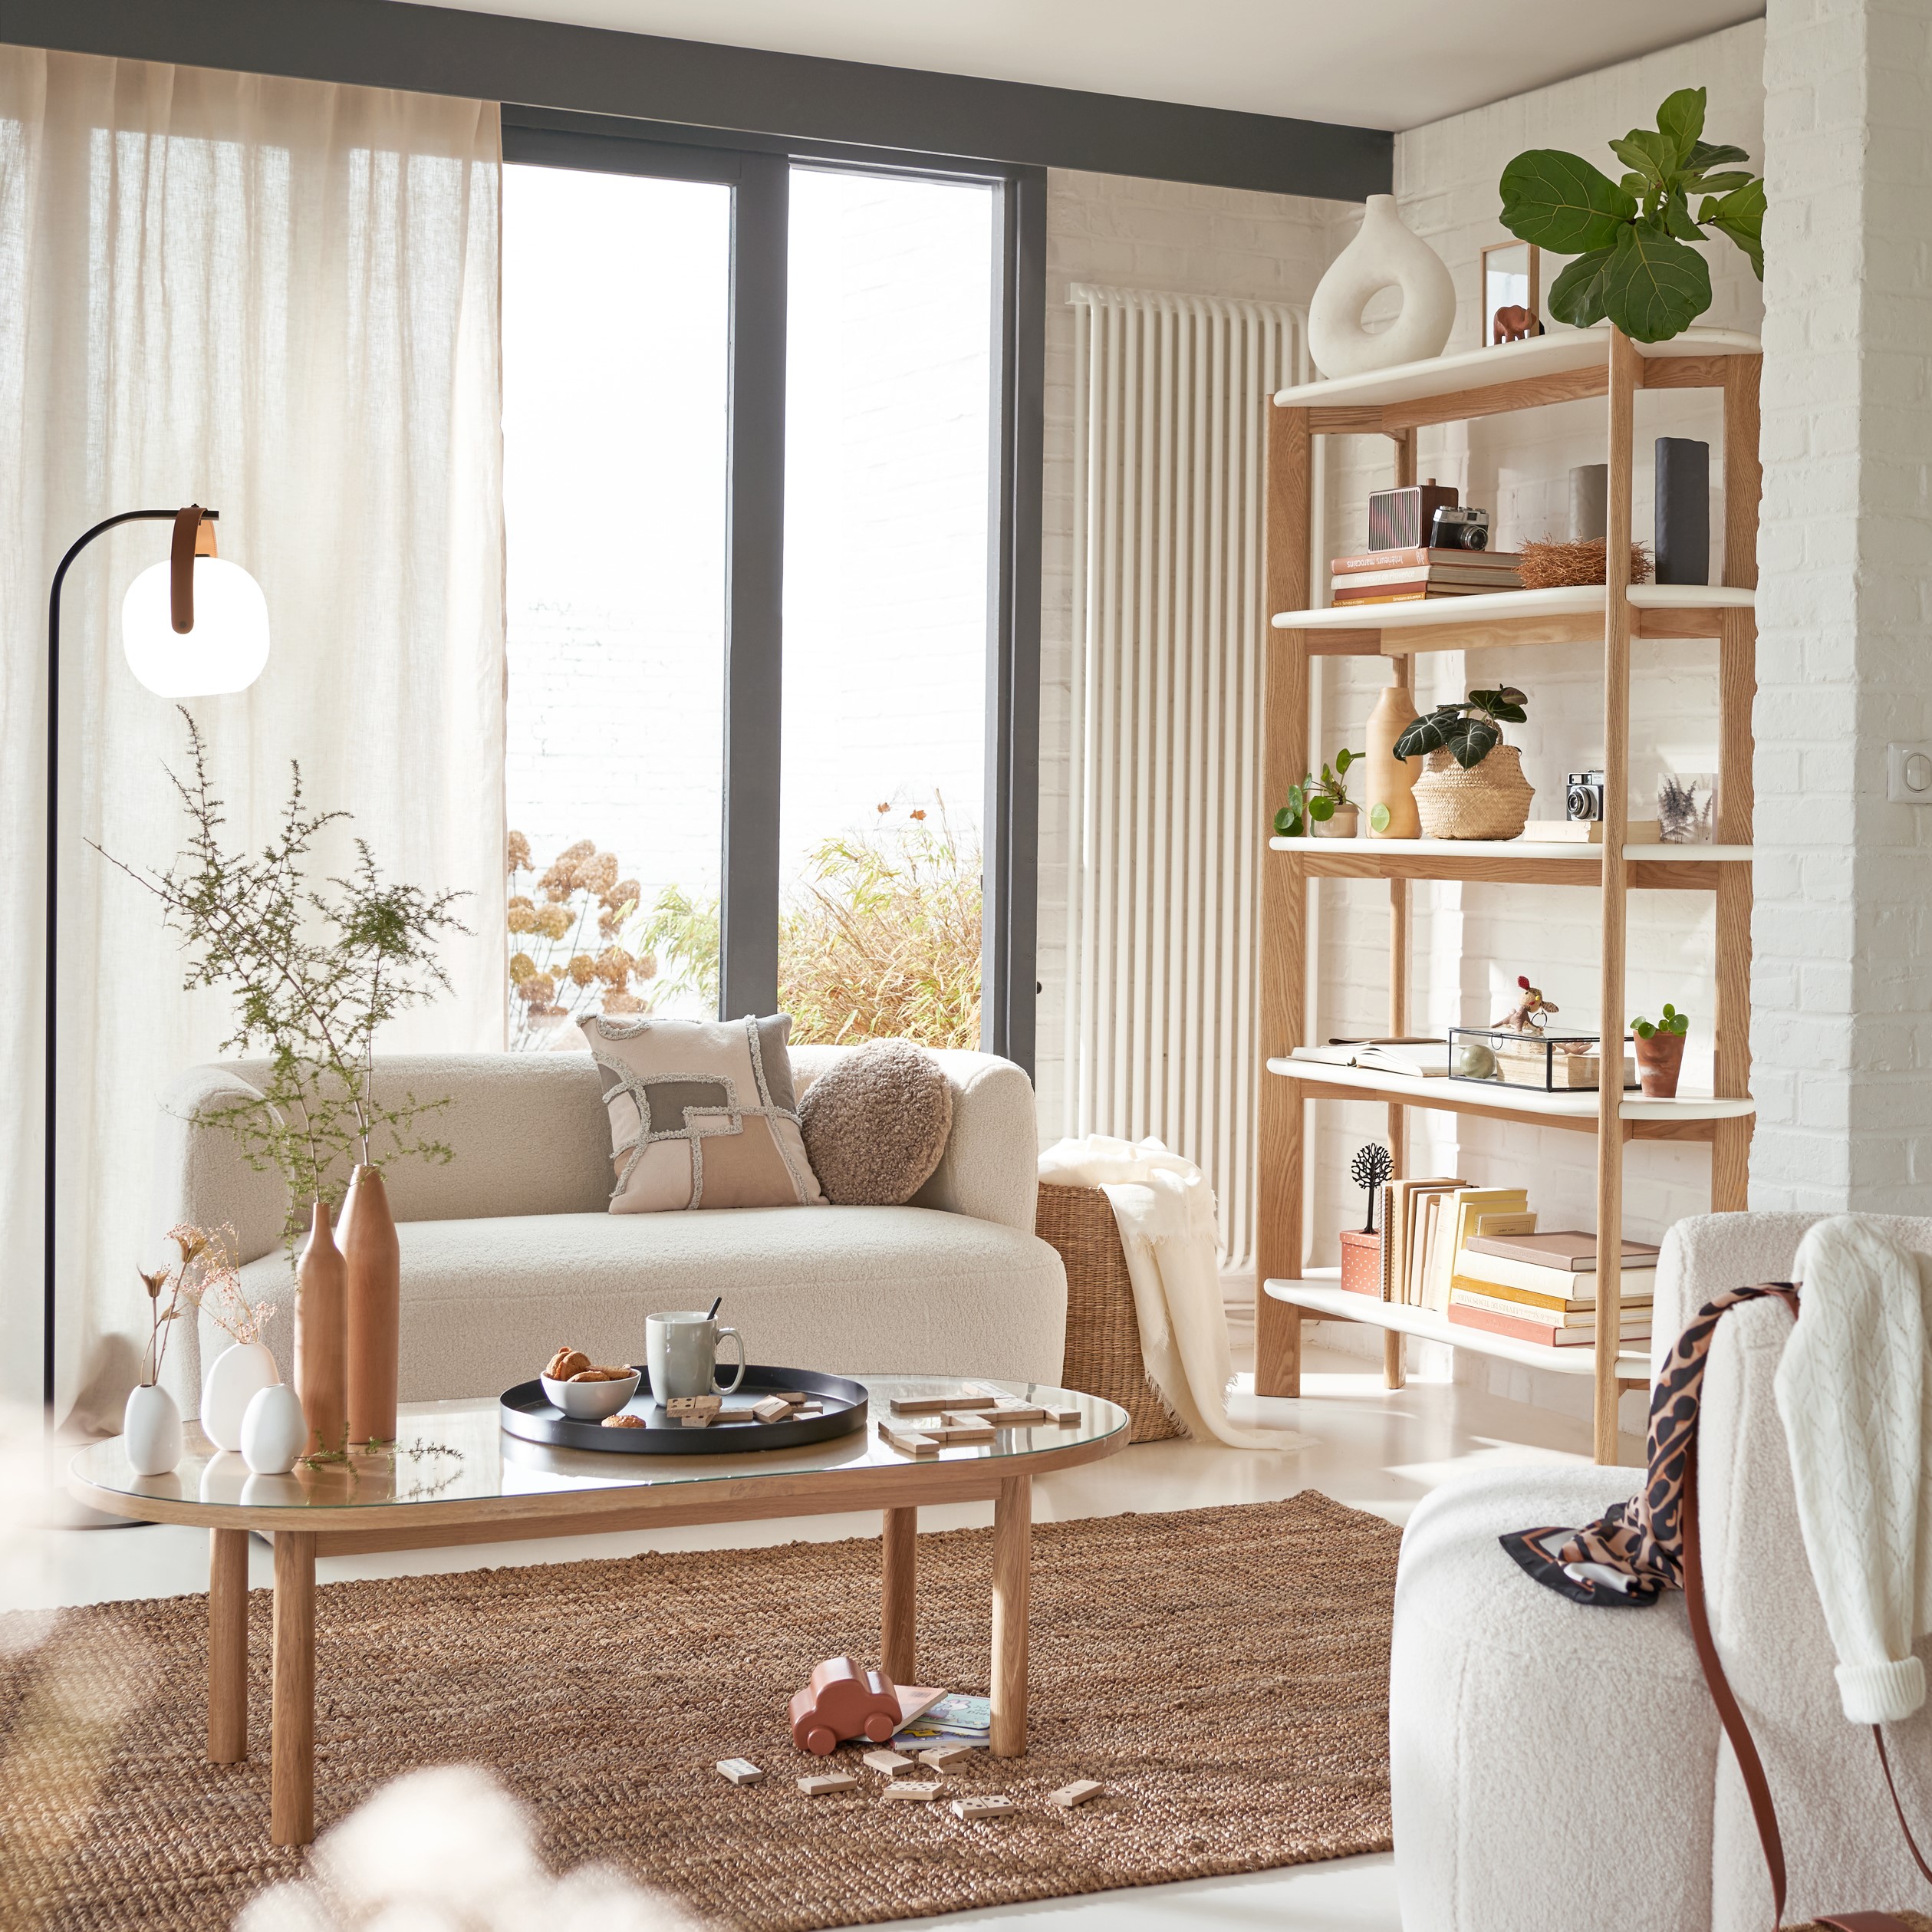 Salon avec mobilier en bois design et agréable chez soi